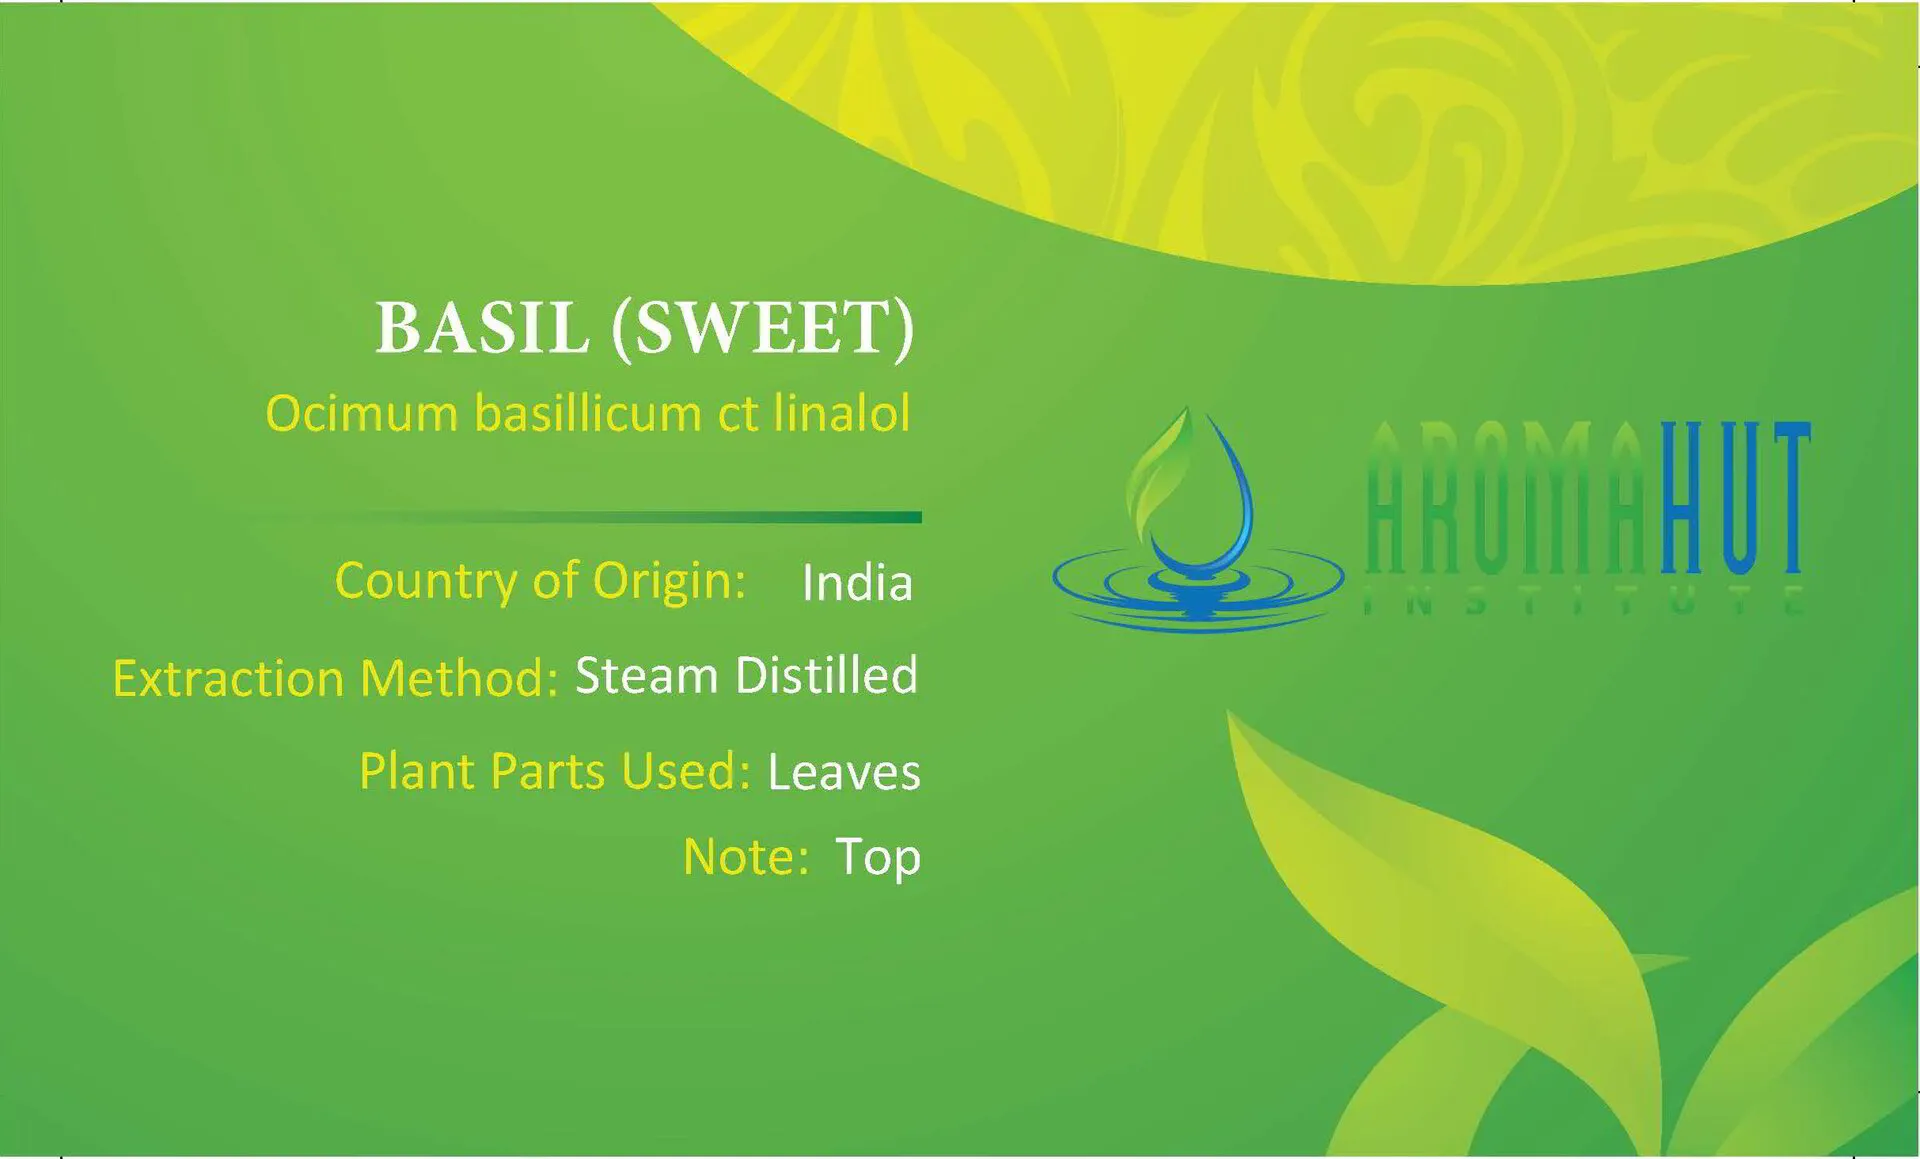 Basil Essential Oil | Aroma Hut Institute